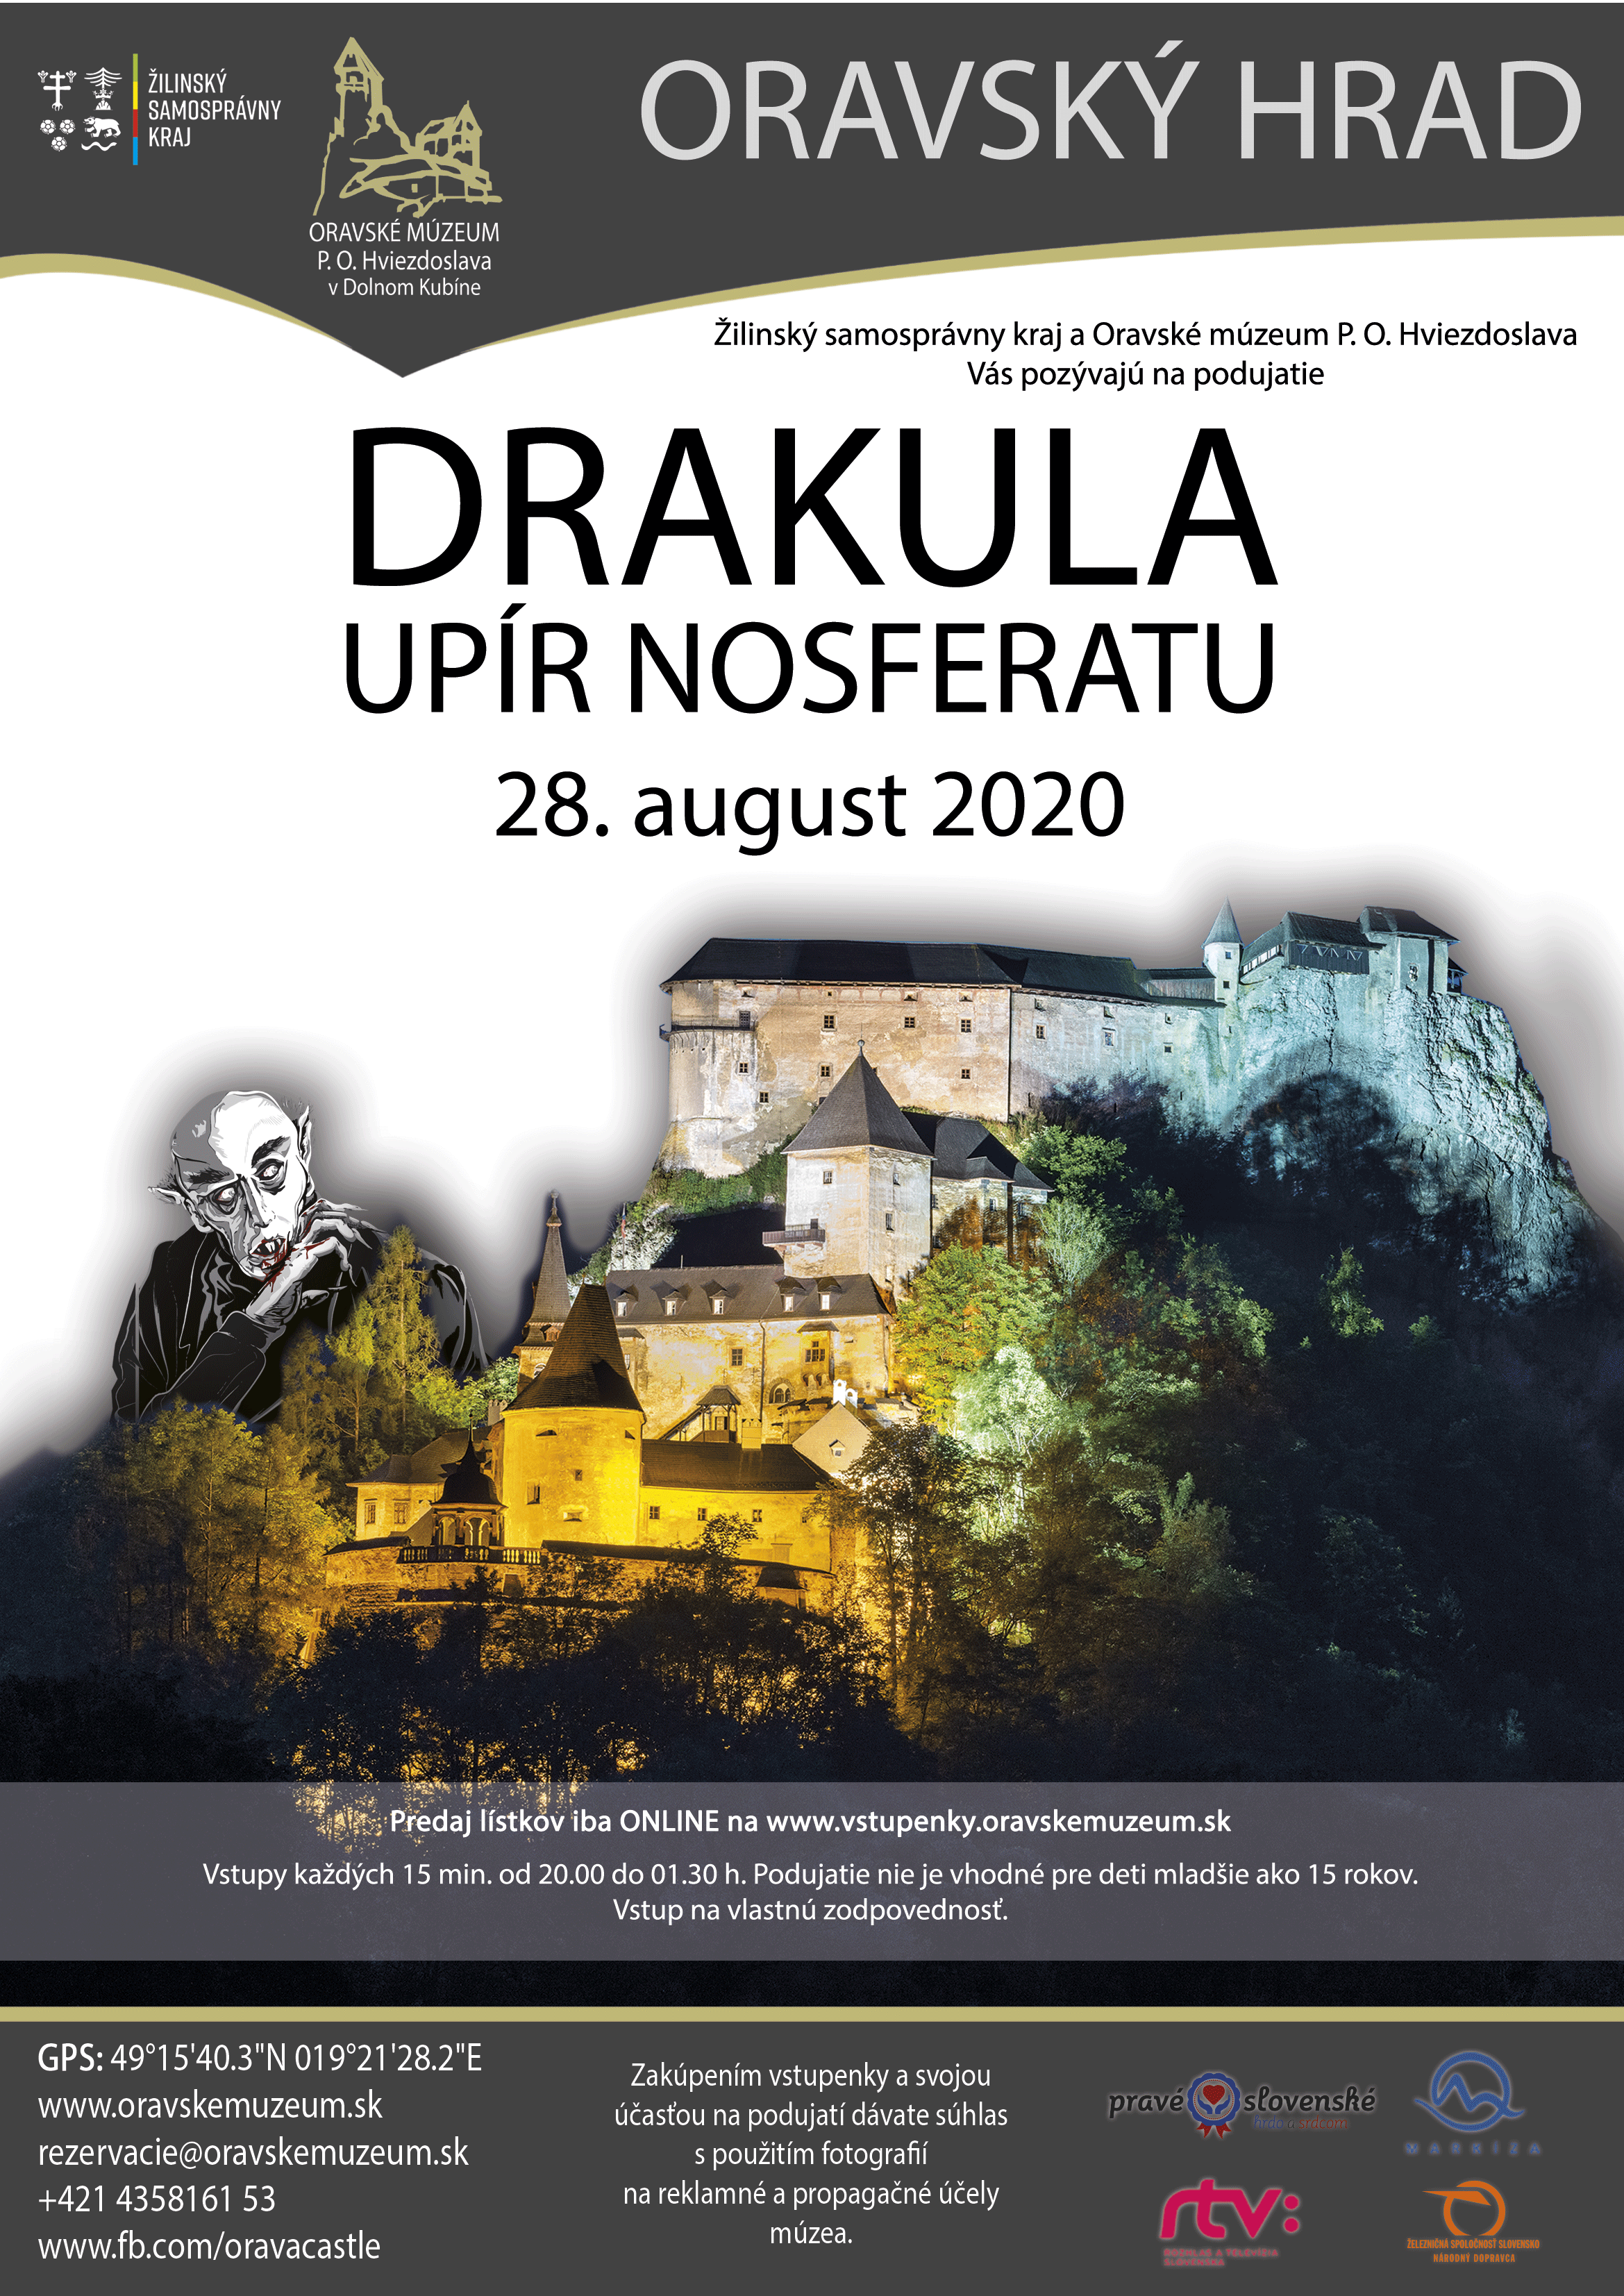 , Posledná nočná prehliadka na Oravskom hrade bude venovaná Drakulovi